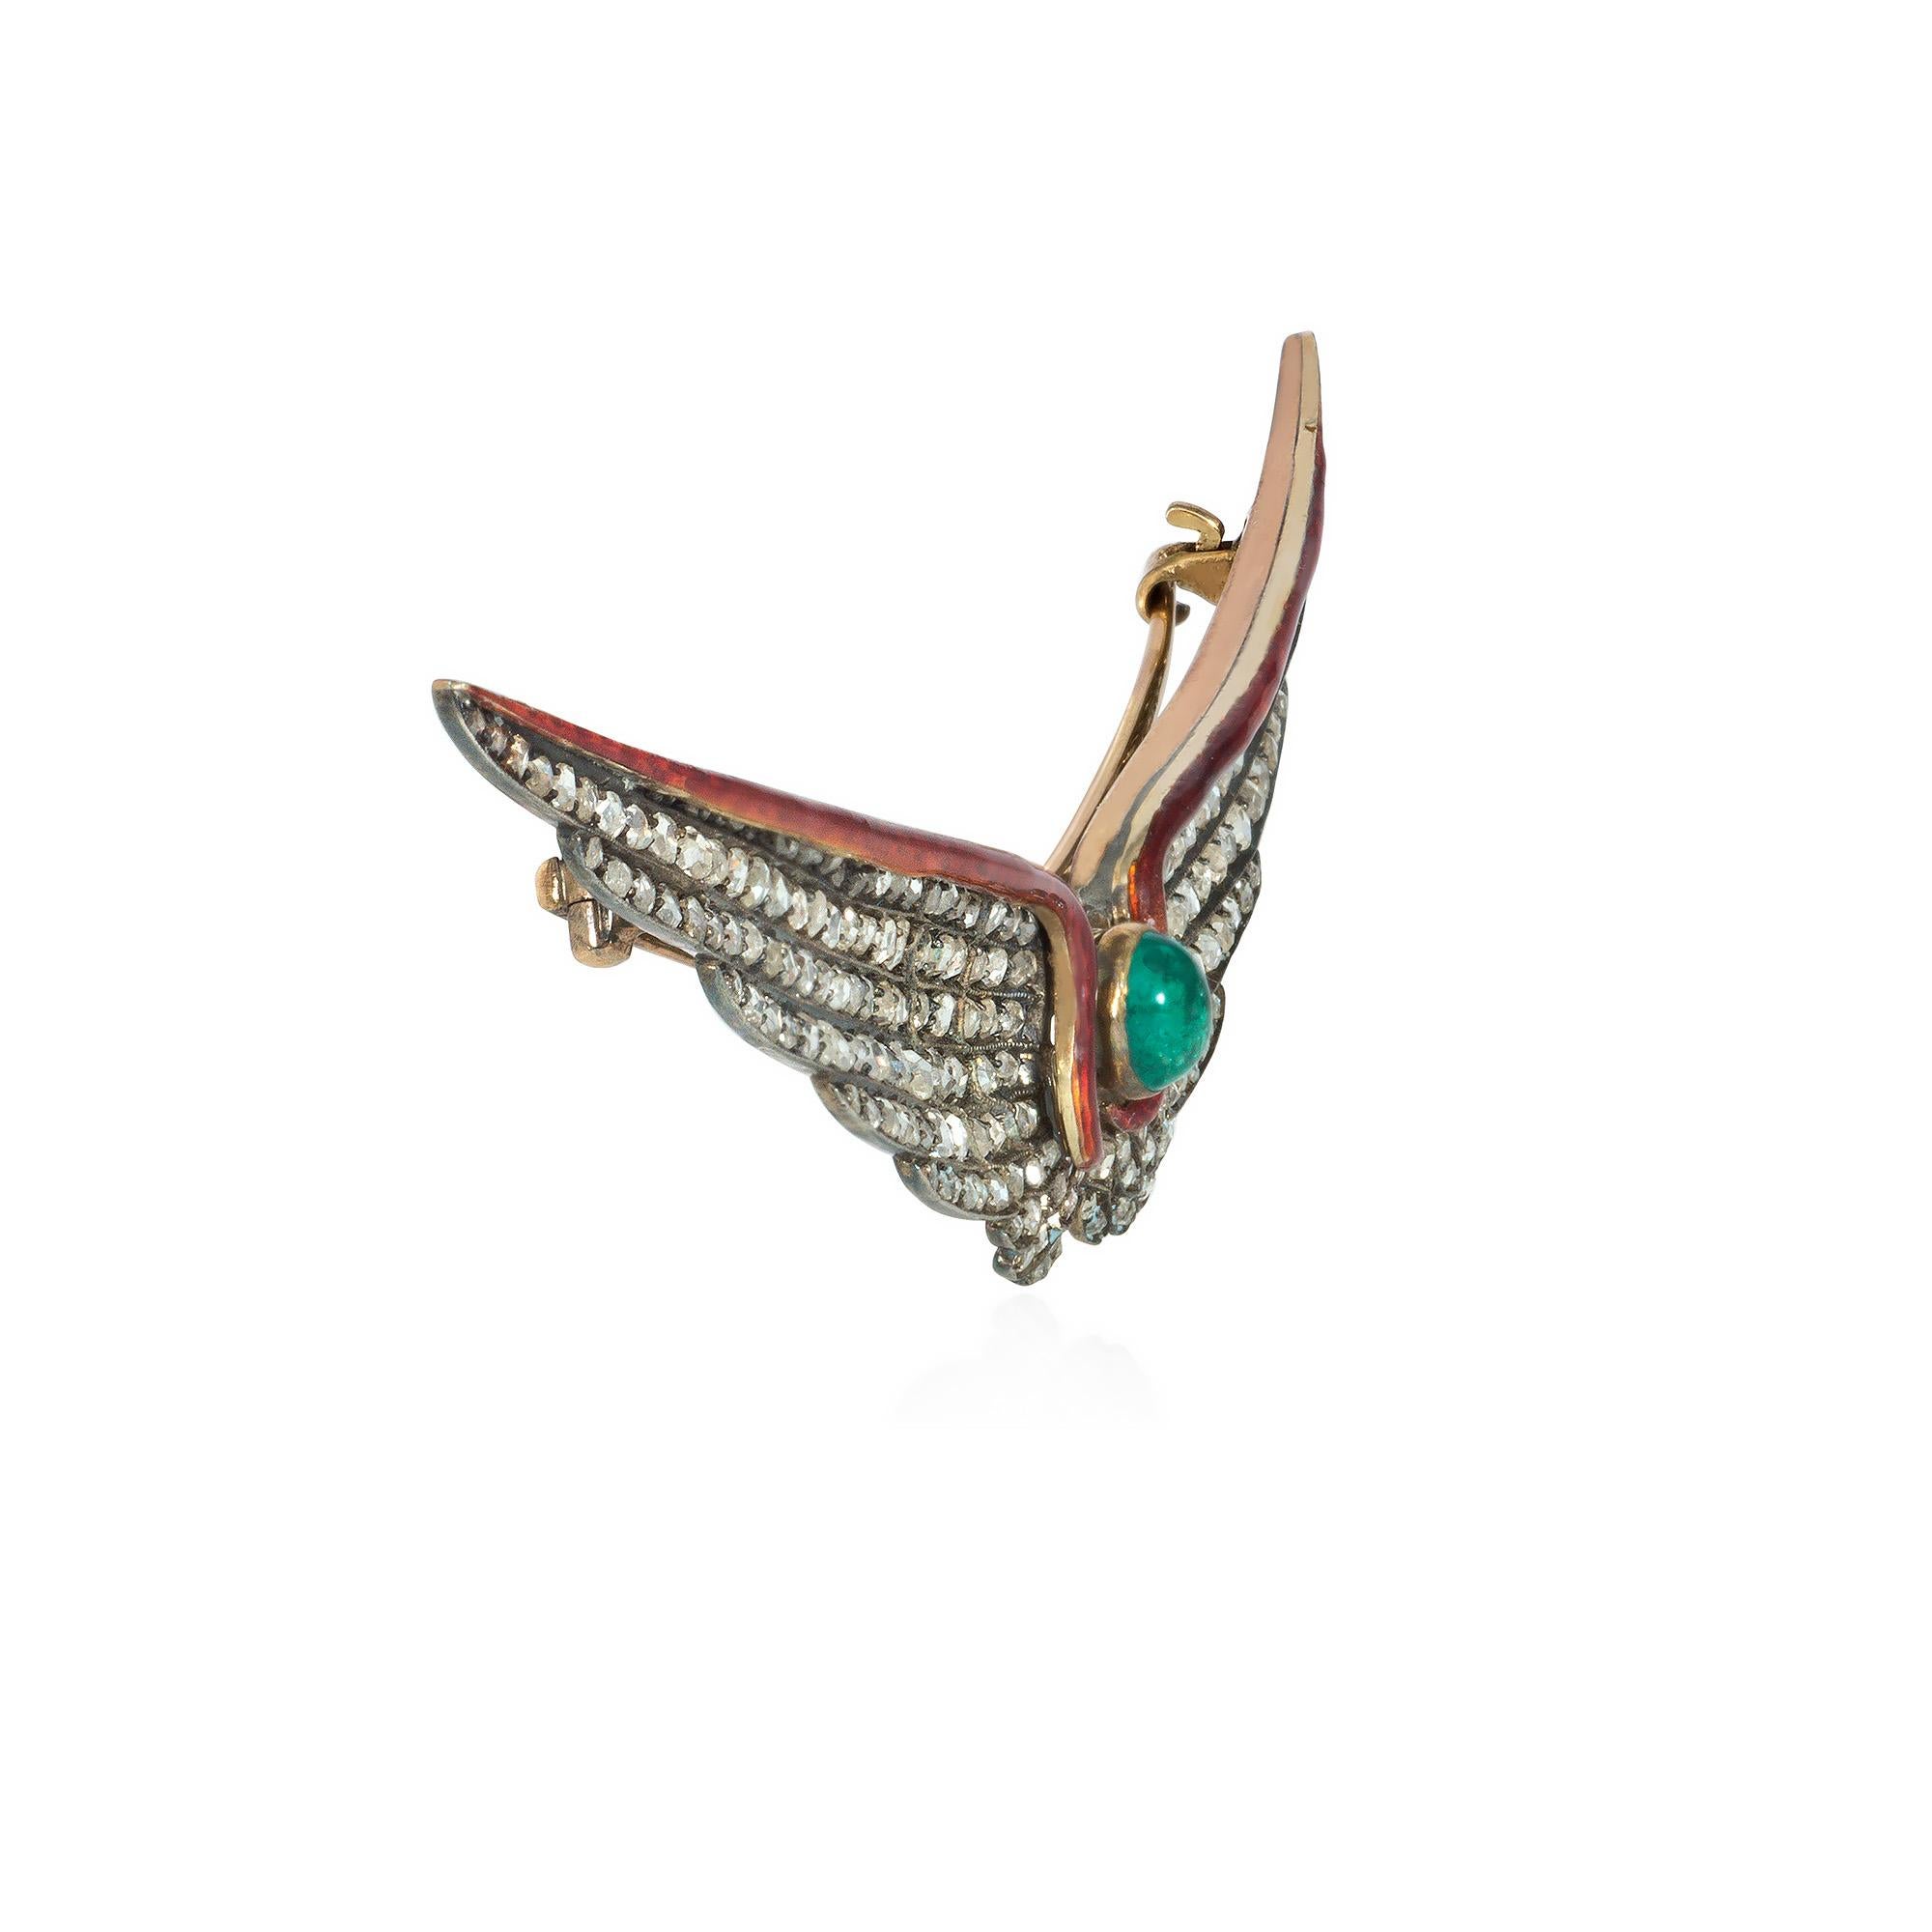 Broche antique de la fin de l'époque victorienne en diamants, émeraudes et émail, représentant une paire d'ailes déployées serties de diamants taillés en rose, avec une bordure d'émail auburn sur les bords supérieurs et centrée sur une émeraude